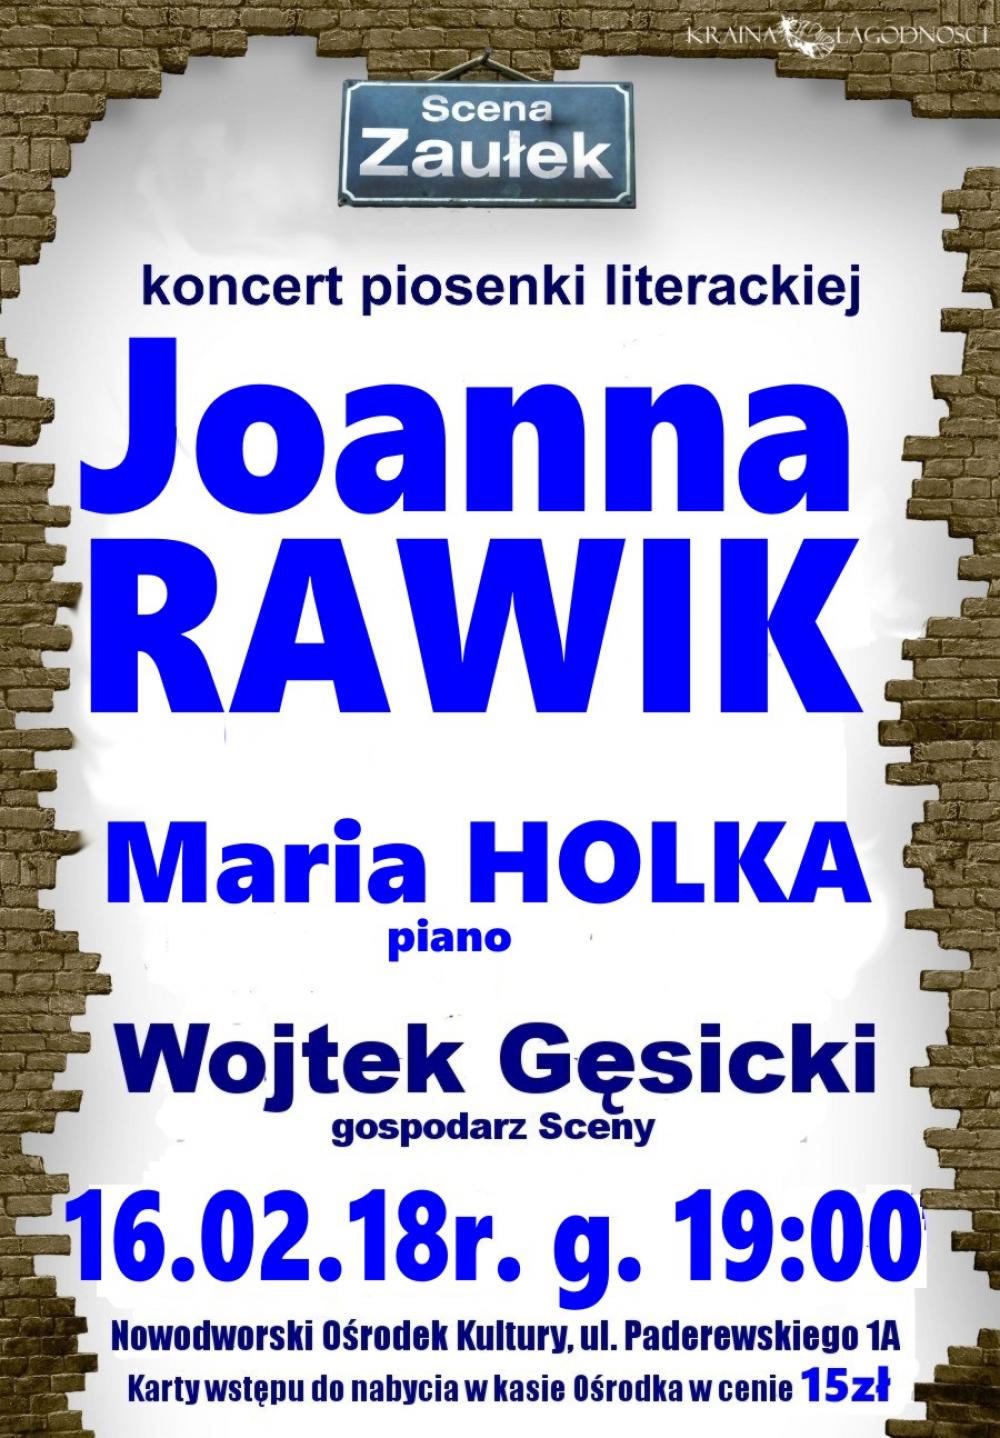 16.02.2018 r. godz. 19:00 w NOK-u koncert piosenki literackiej Joanny Rawik podczas spotkania ze "Sceną Zaułek".